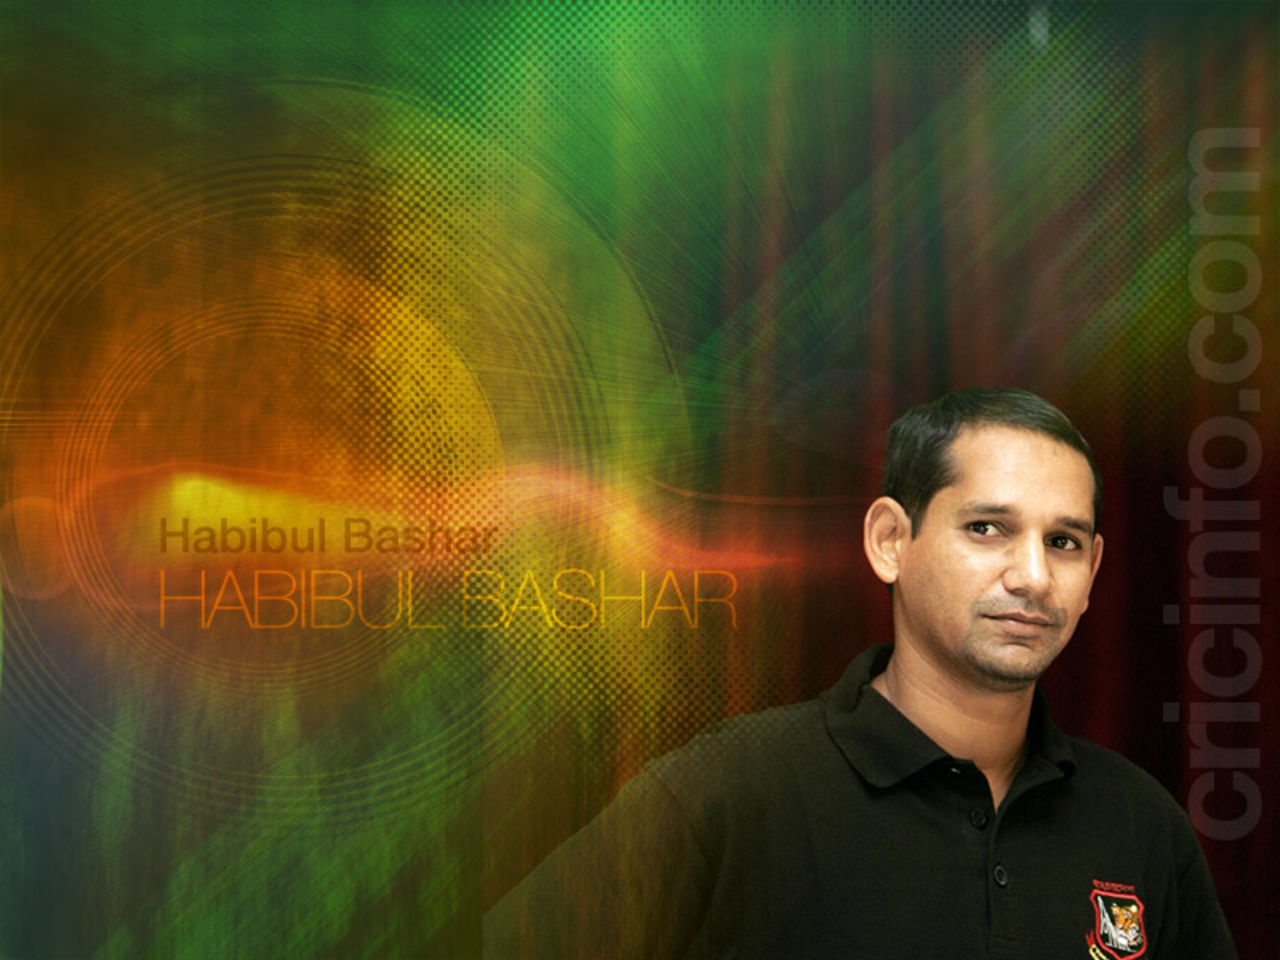 Habibul Bashar